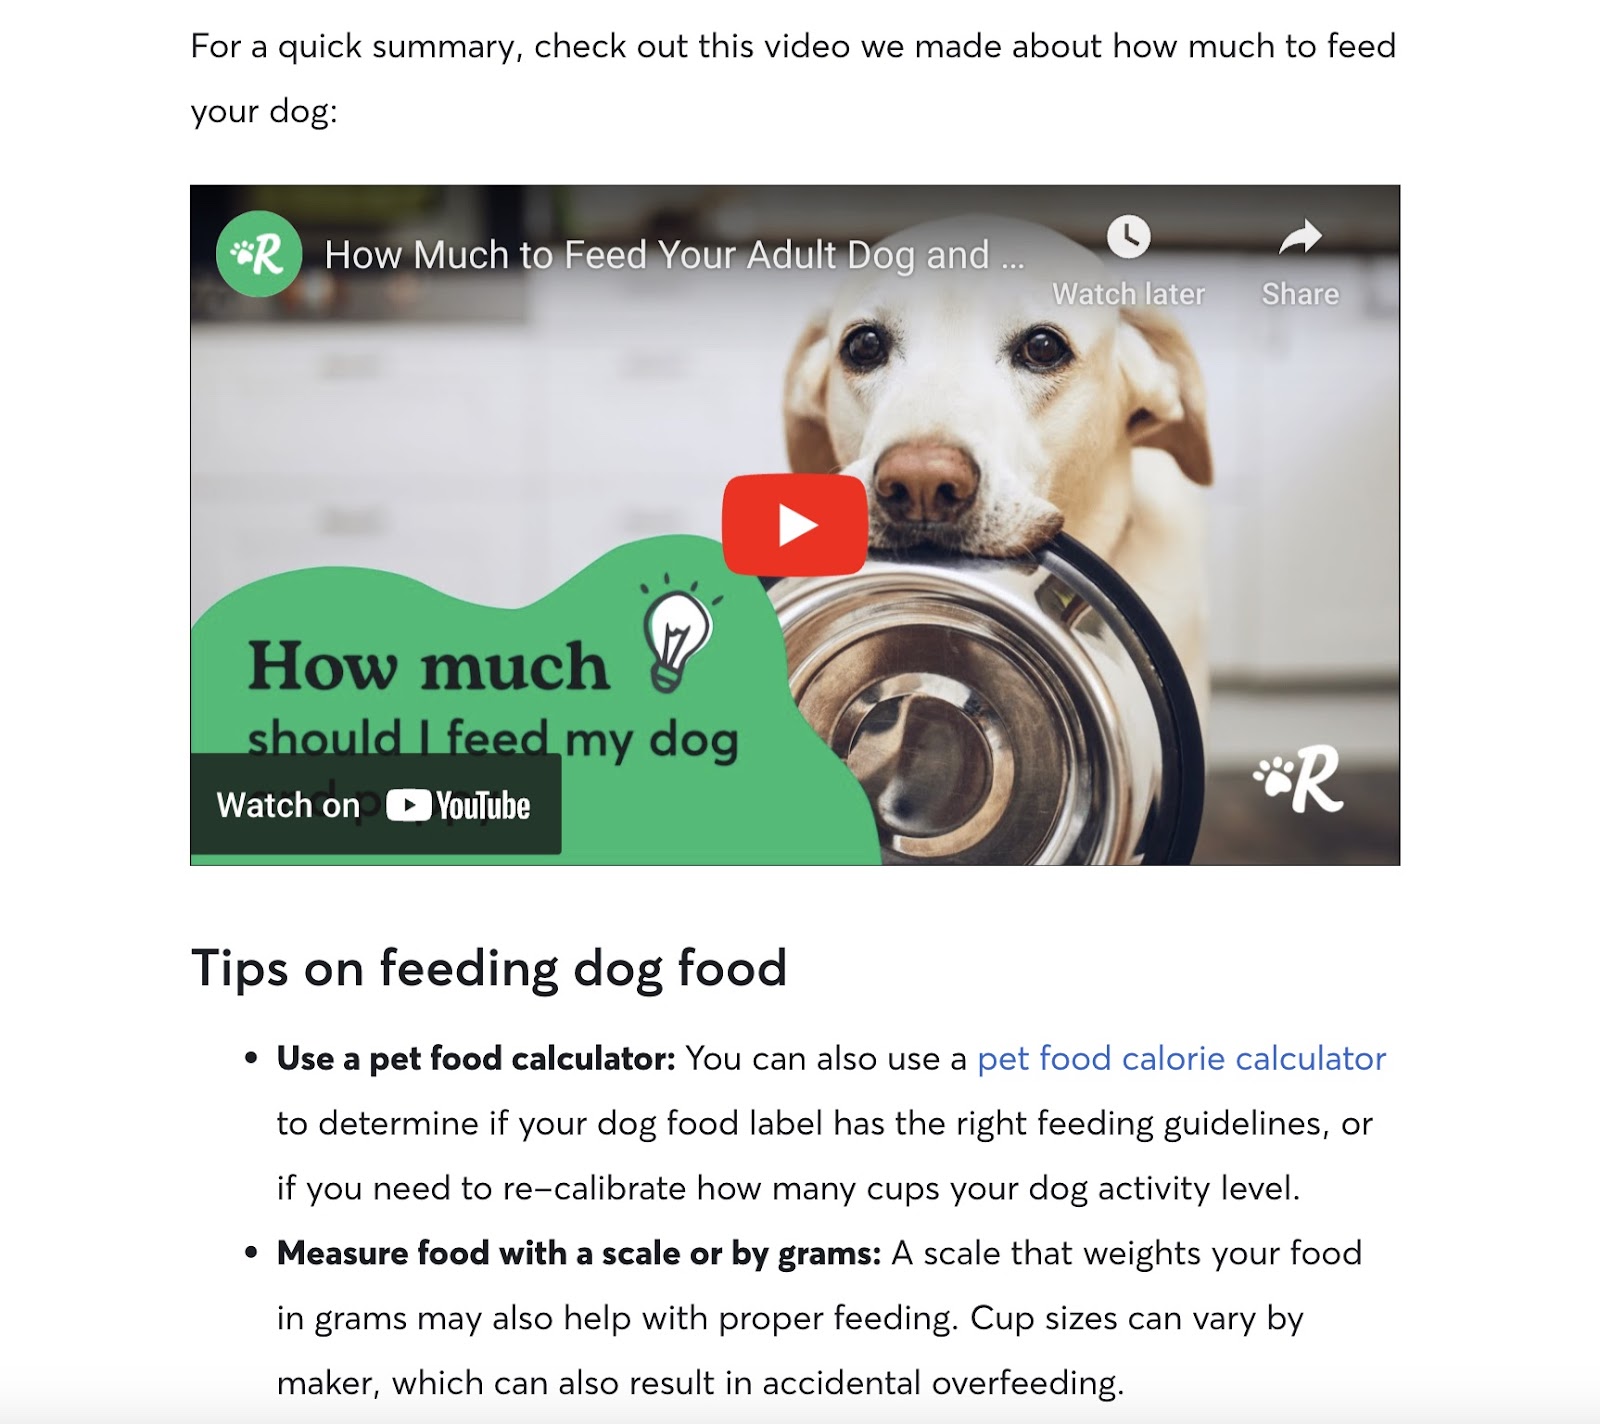 Video của Rover về hướng dẫn cho việc cho chó ăn, được nhúng trong bài viết